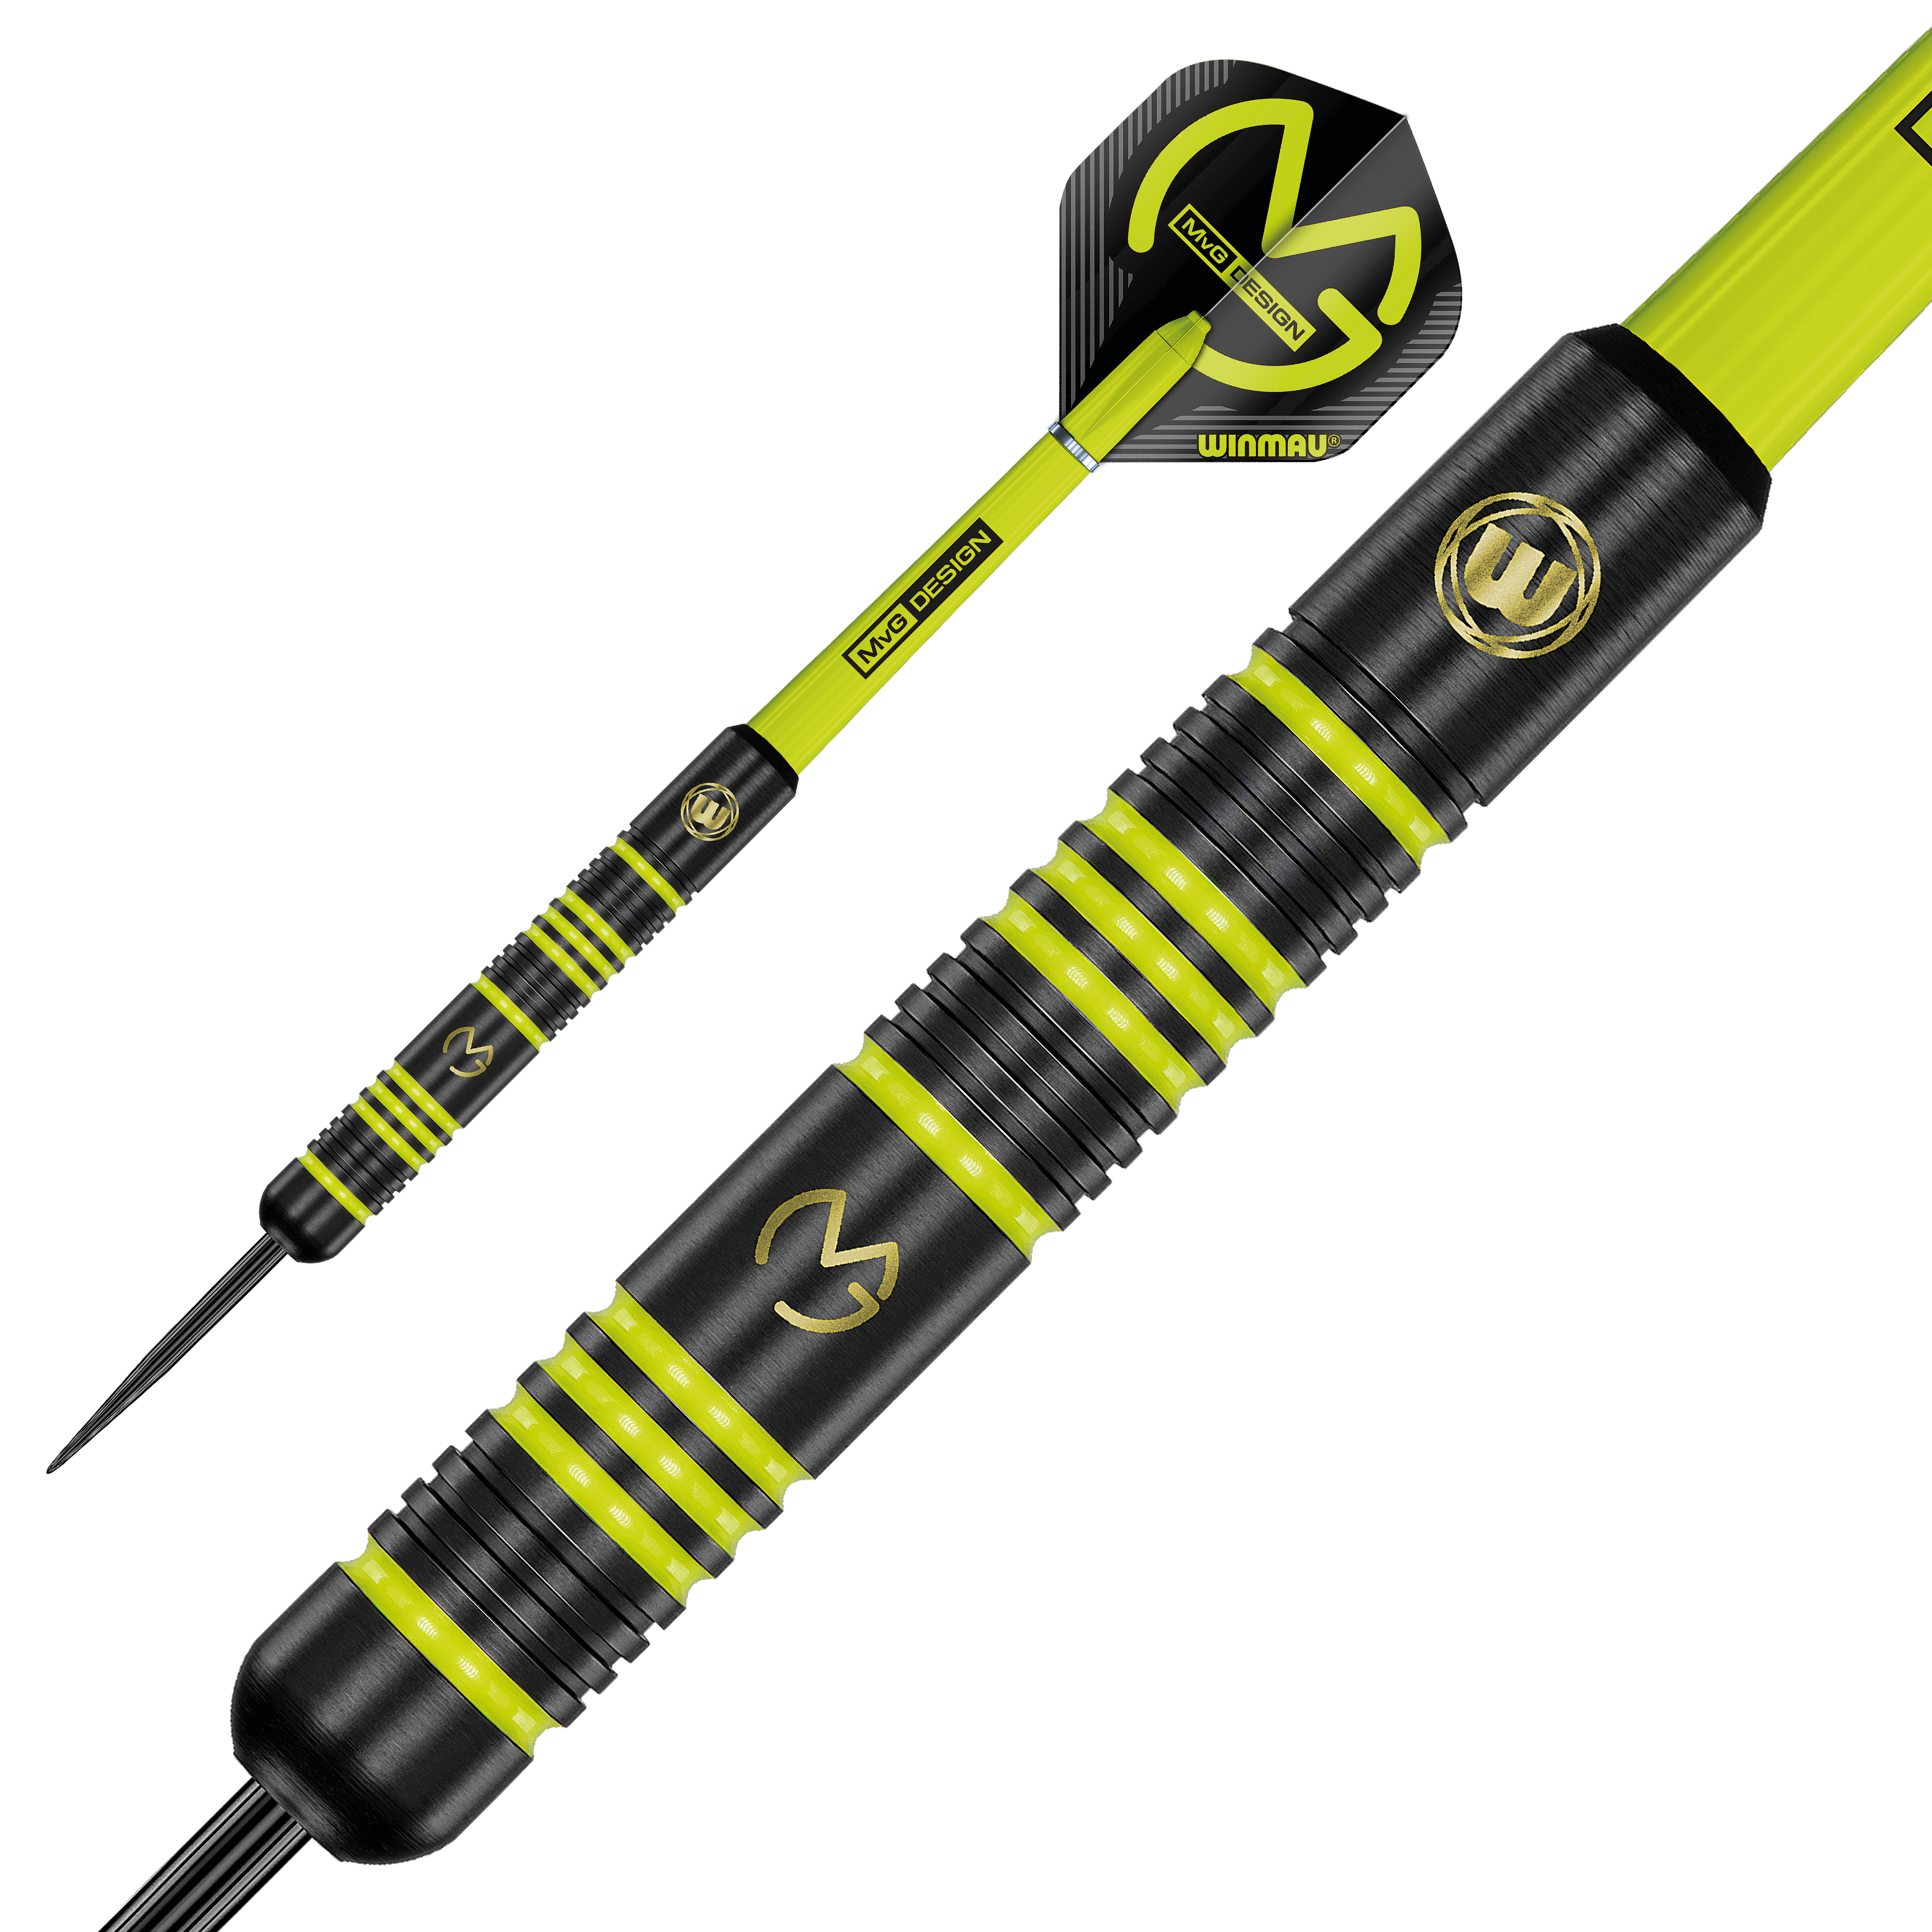 Winmau MVG Ambition steeltip darts 24 gram